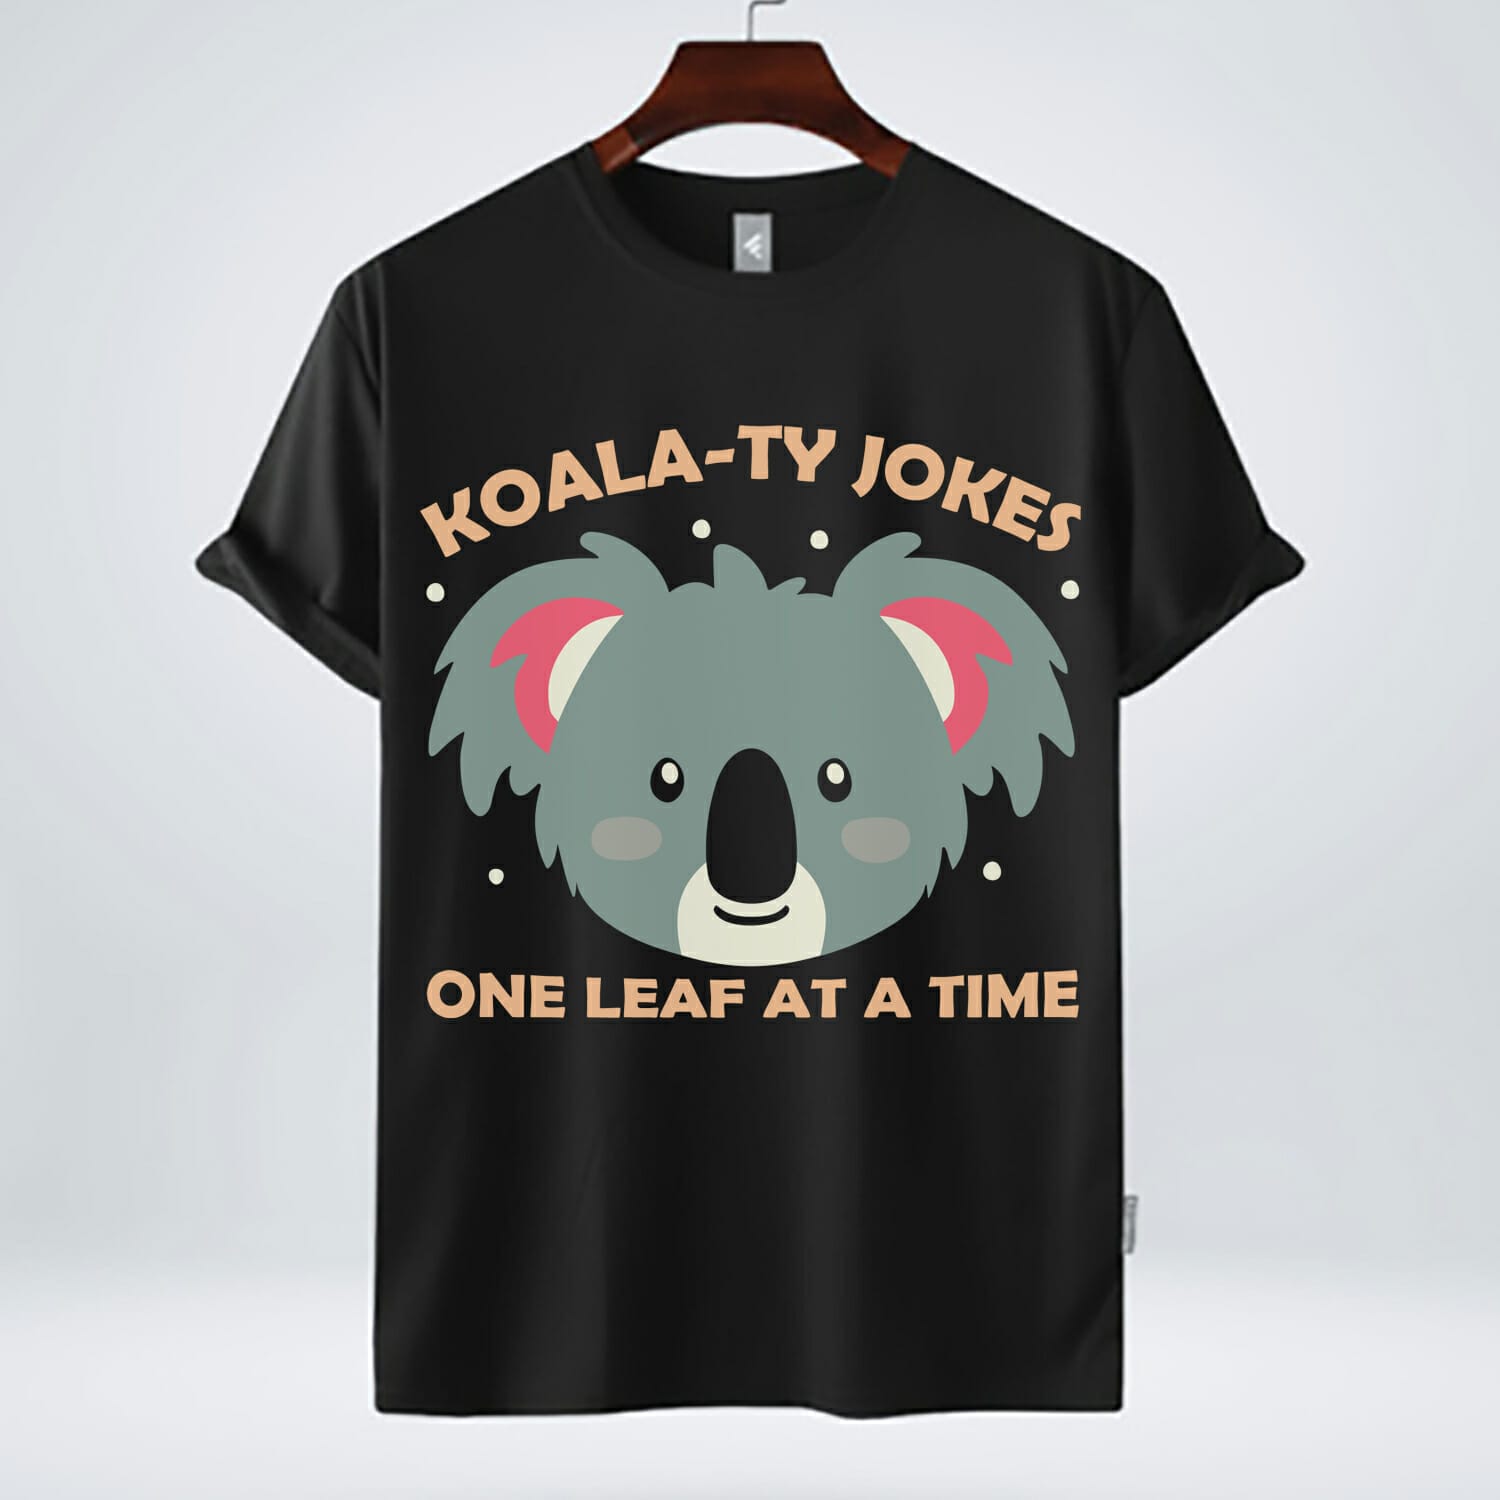 Hilarious Koala-Ty Jokes Tee design